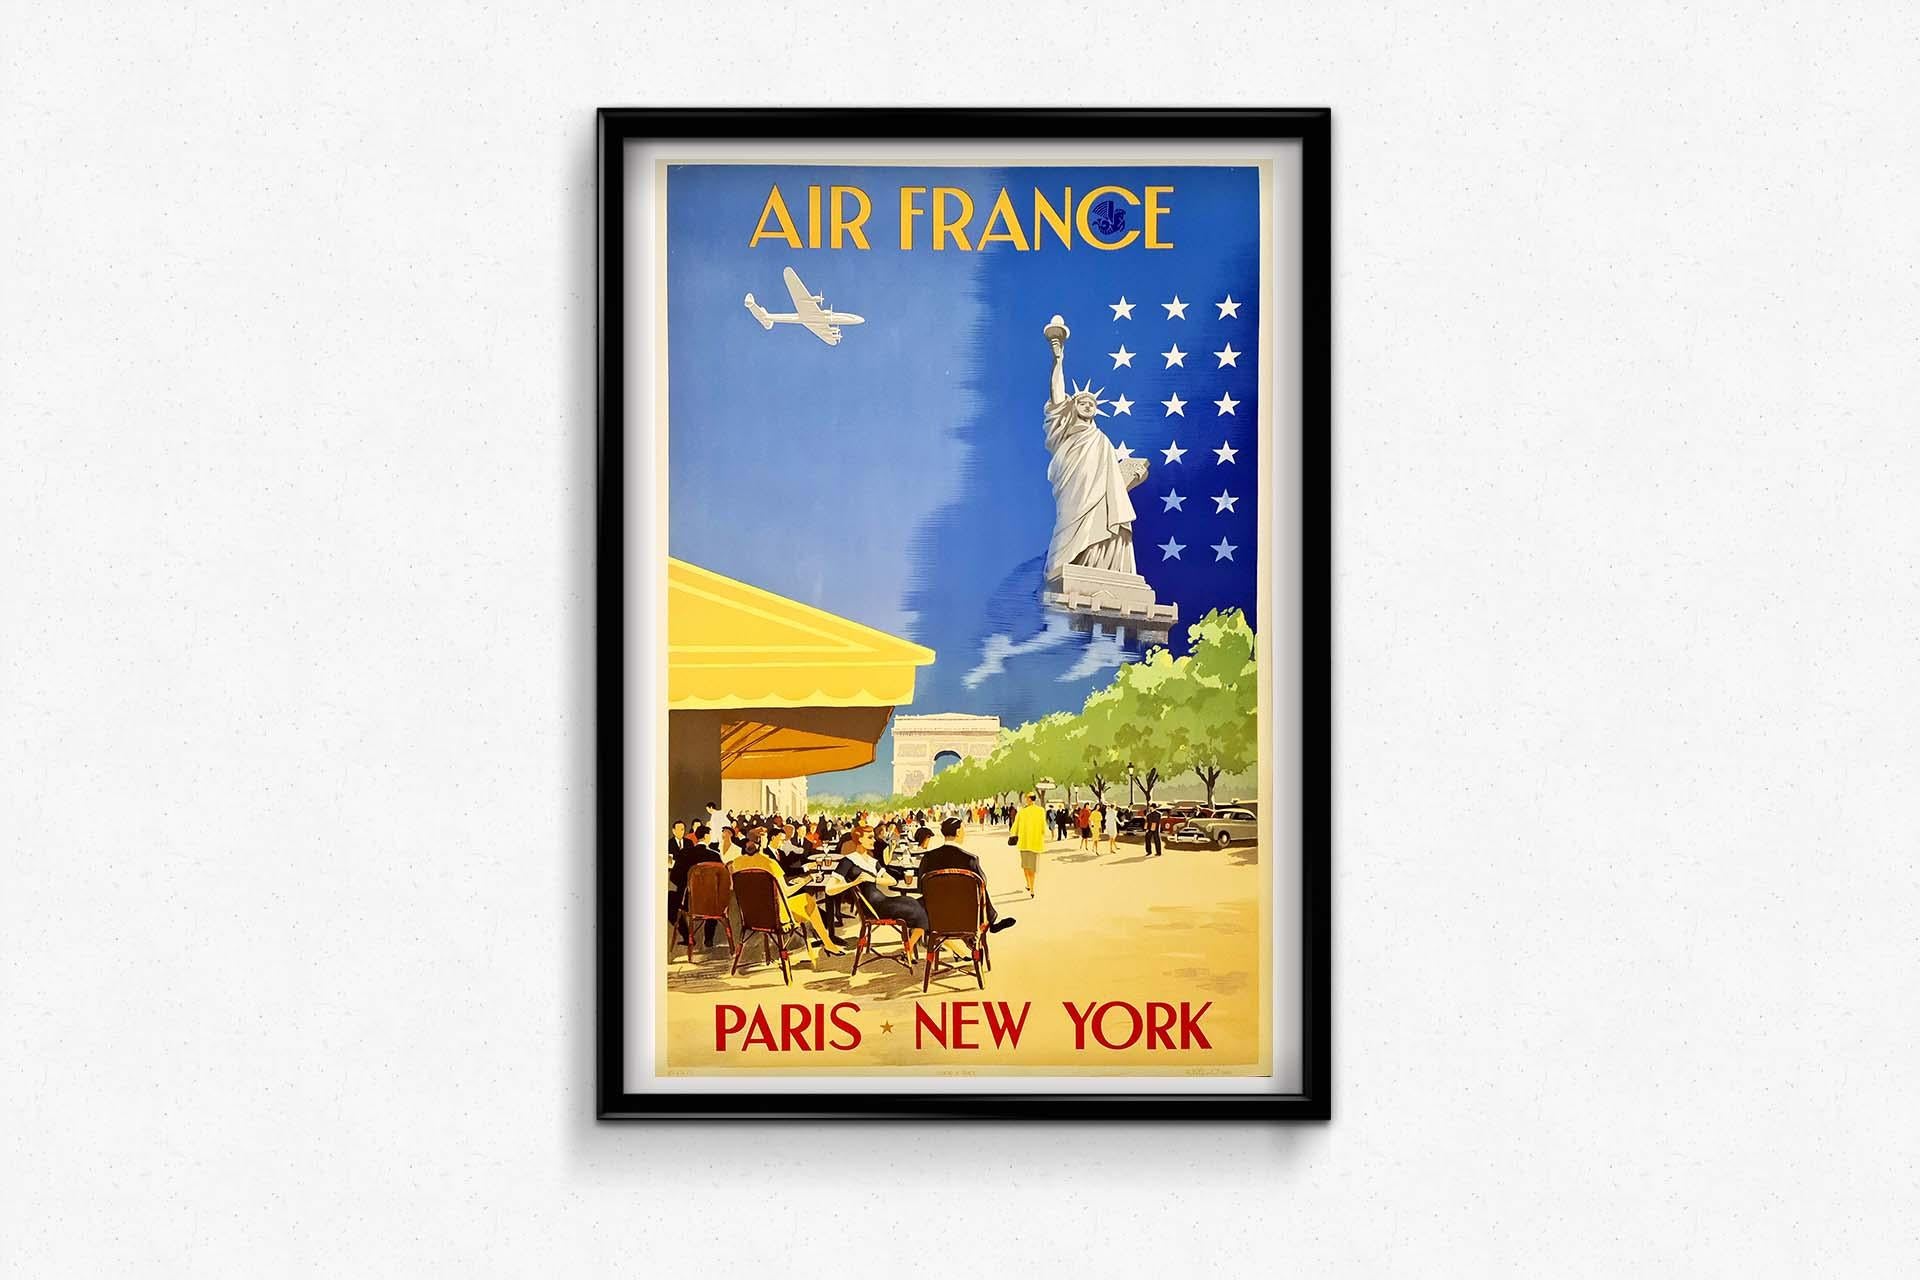 Originalplakat von Air France, das in Paris diente, 1951  New York  Airlines  Reisen im Angebot 1